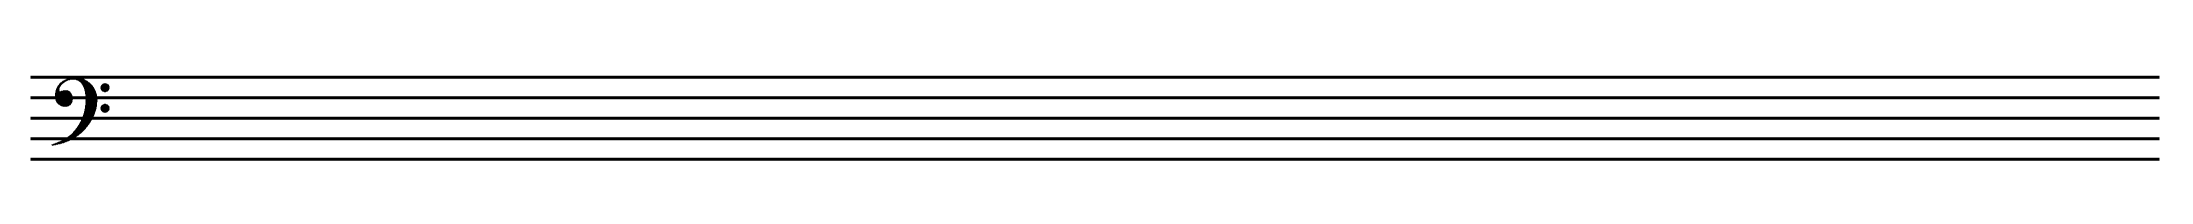 Нотная бумага с проставленными скрипичными ключами